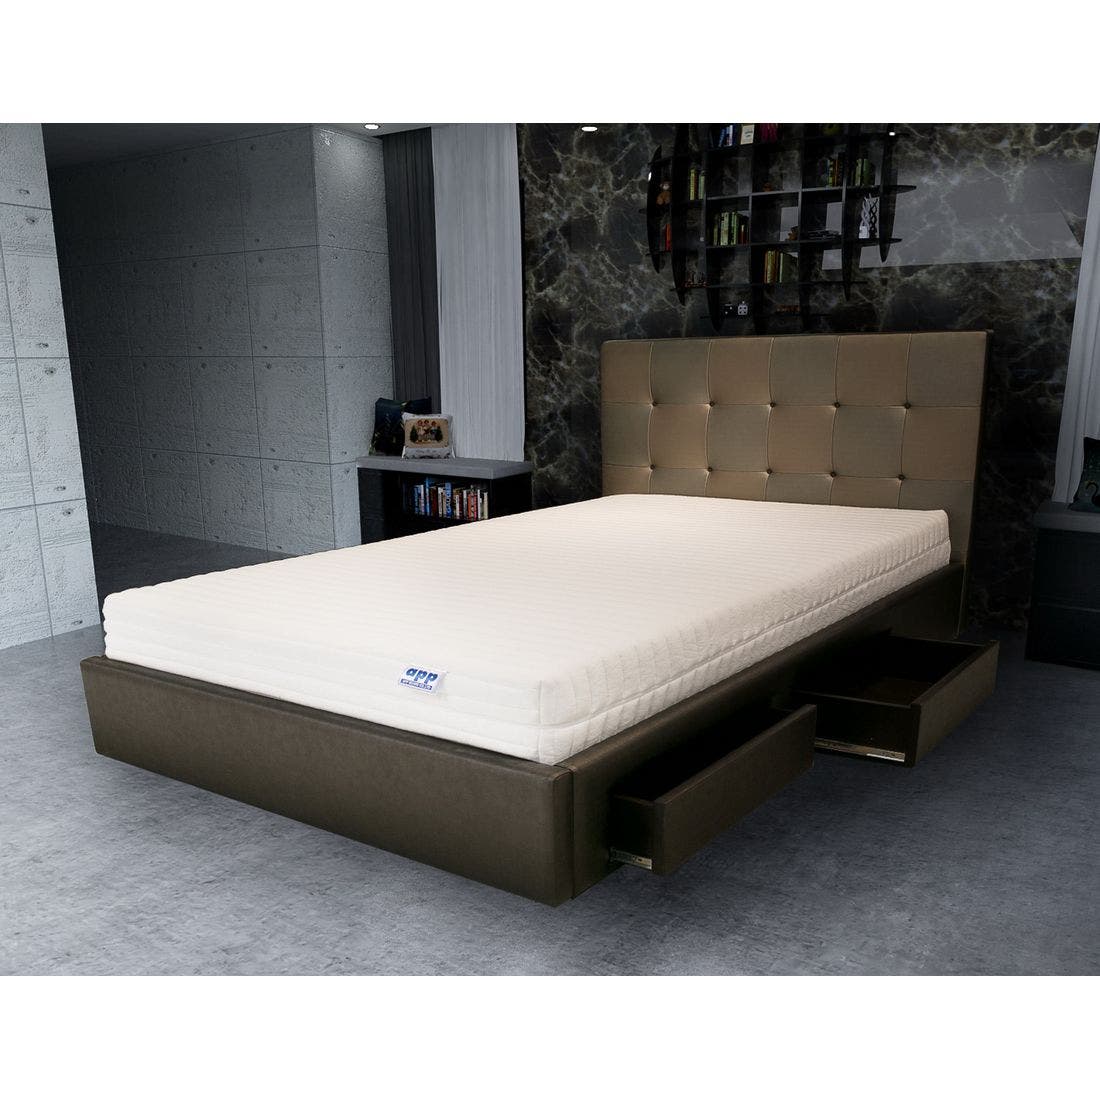 39001625-mattress-bedding-mattresses-latex-mattresses-31